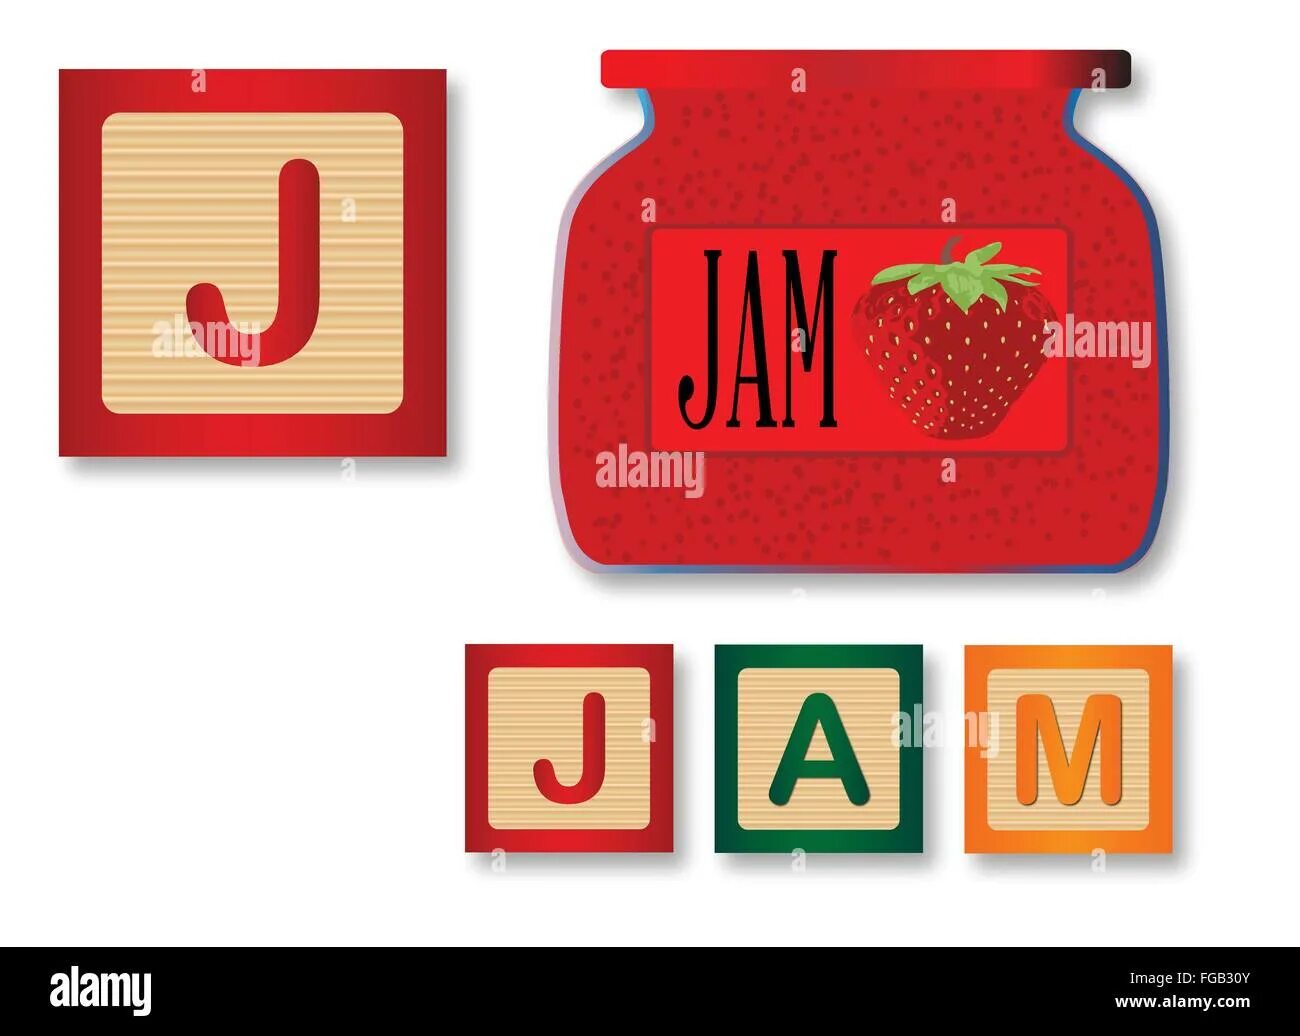 Juice is under the jam перевод. Карточки j for Jam. Картинки на английском джем. Английская Jam с рисунками. Карточки с английскими буквами j Jam.